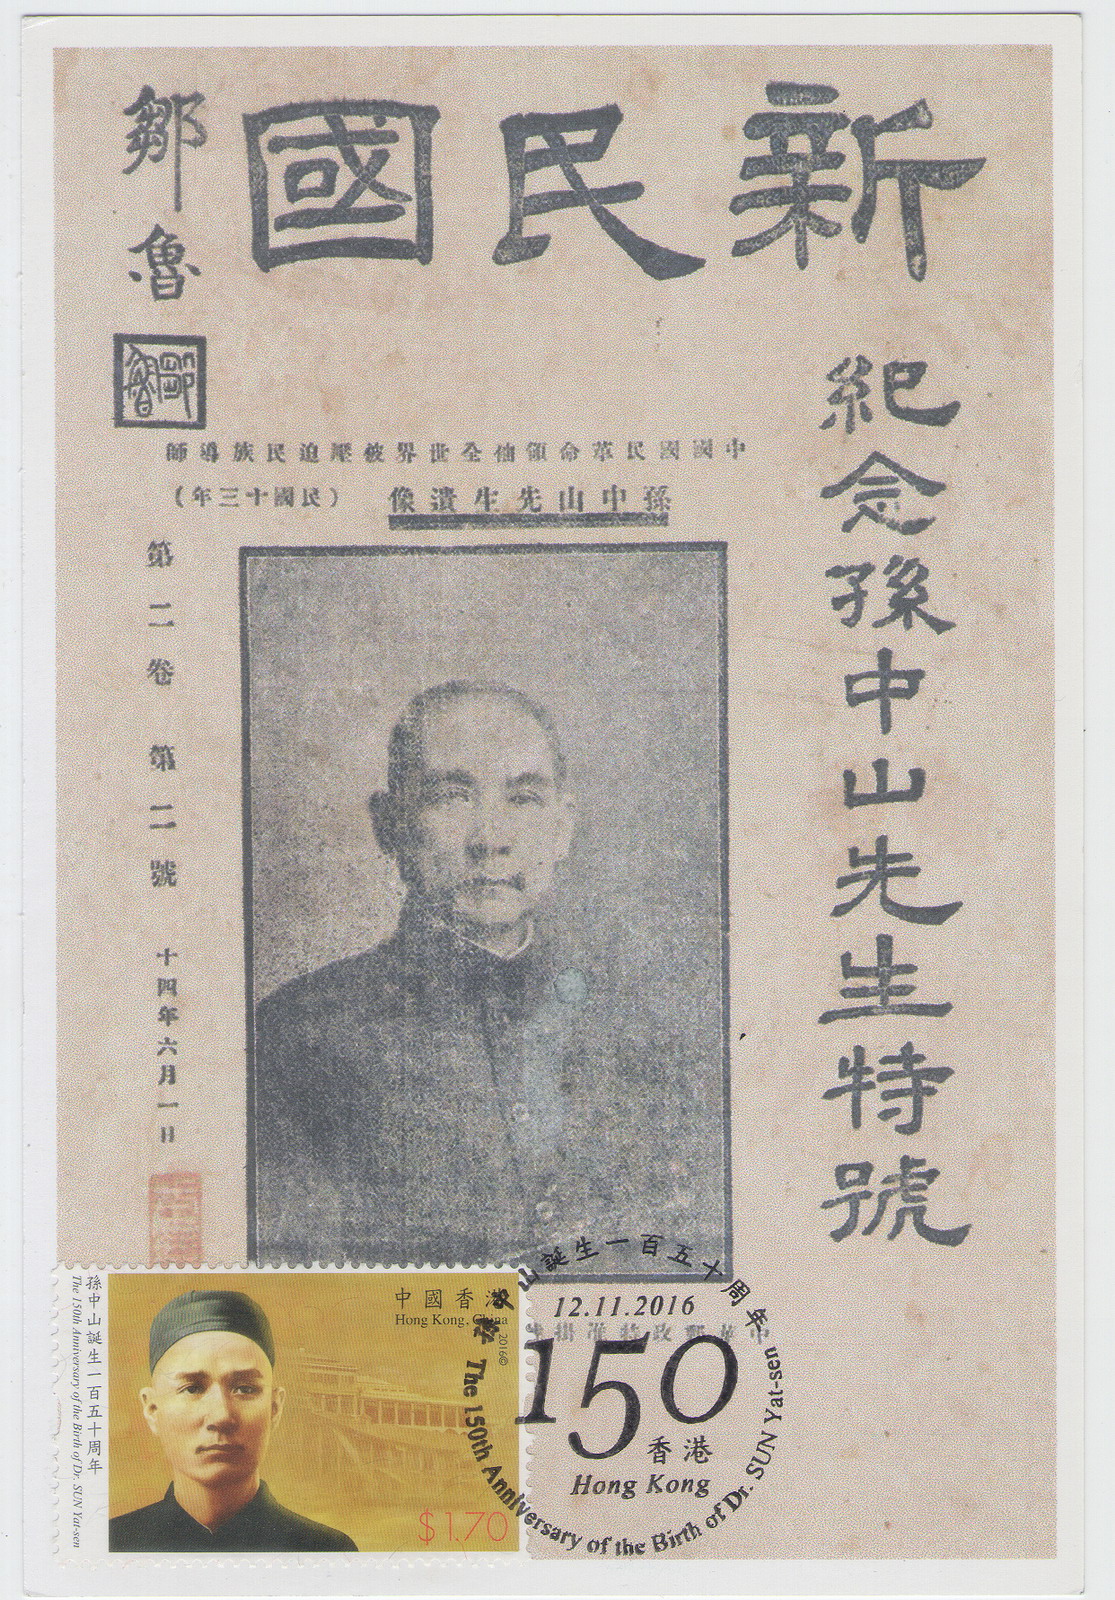 香港孙中山诞生150周年纪念-极限片-D1-A_resize.jpg